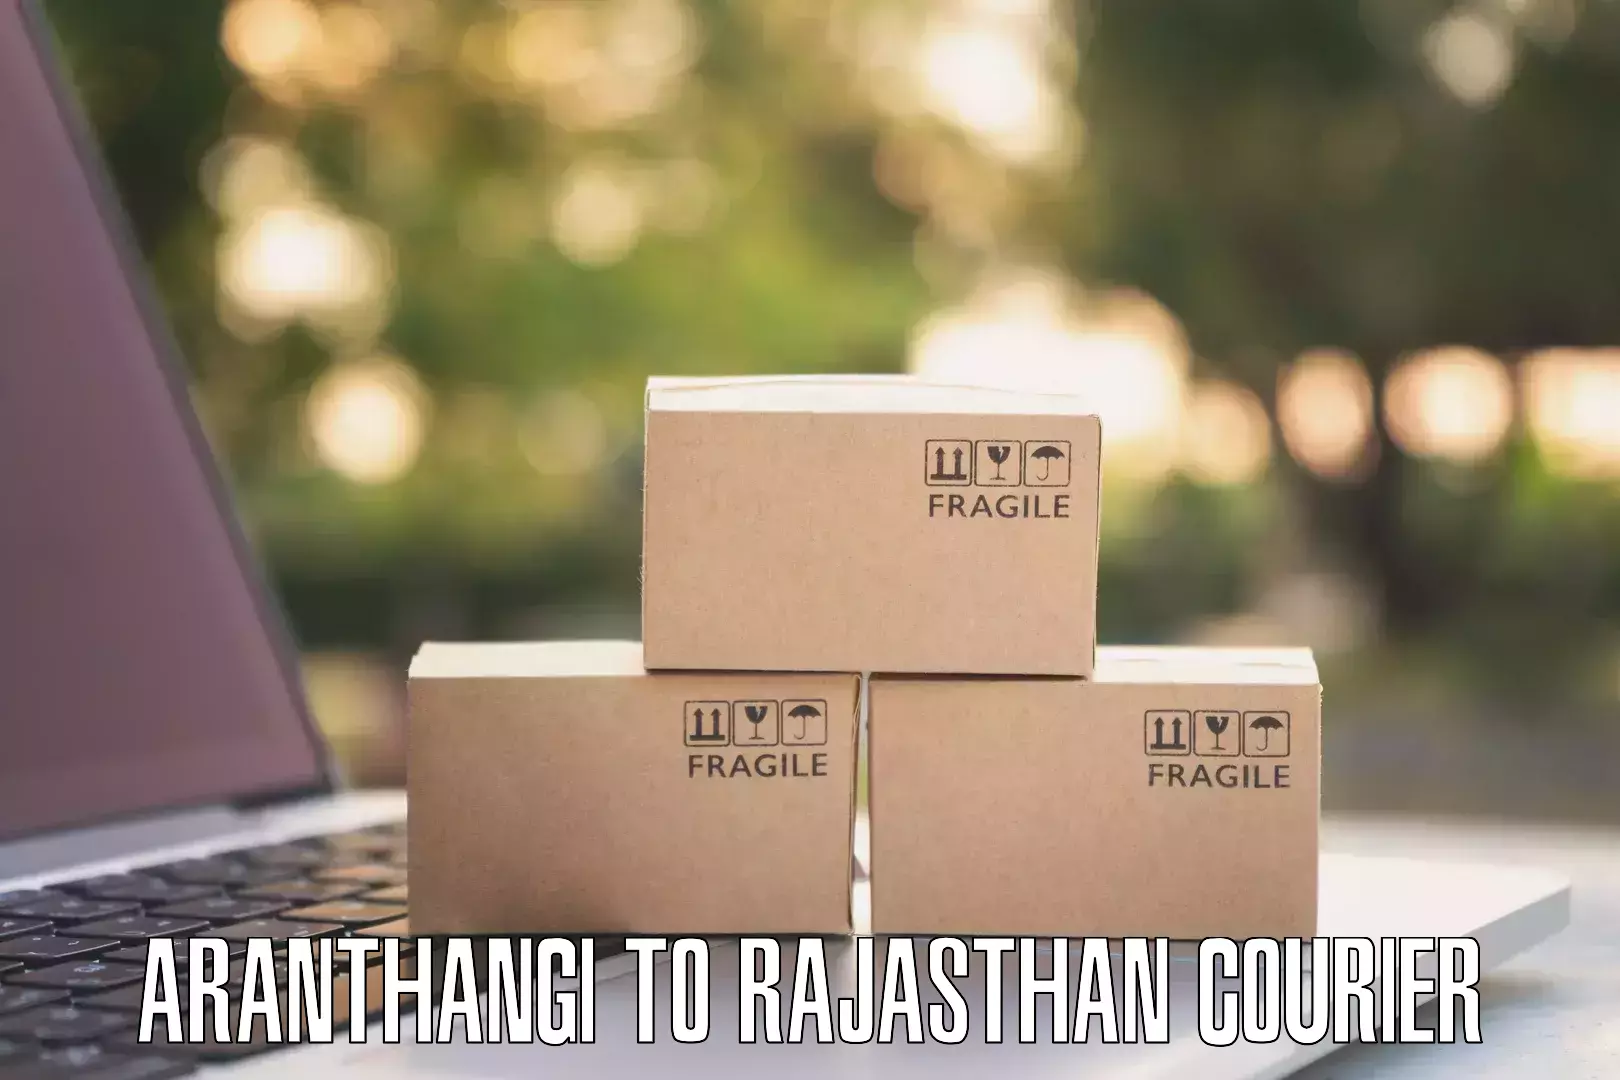 Efficient cargo handling Aranthangi to Dausa